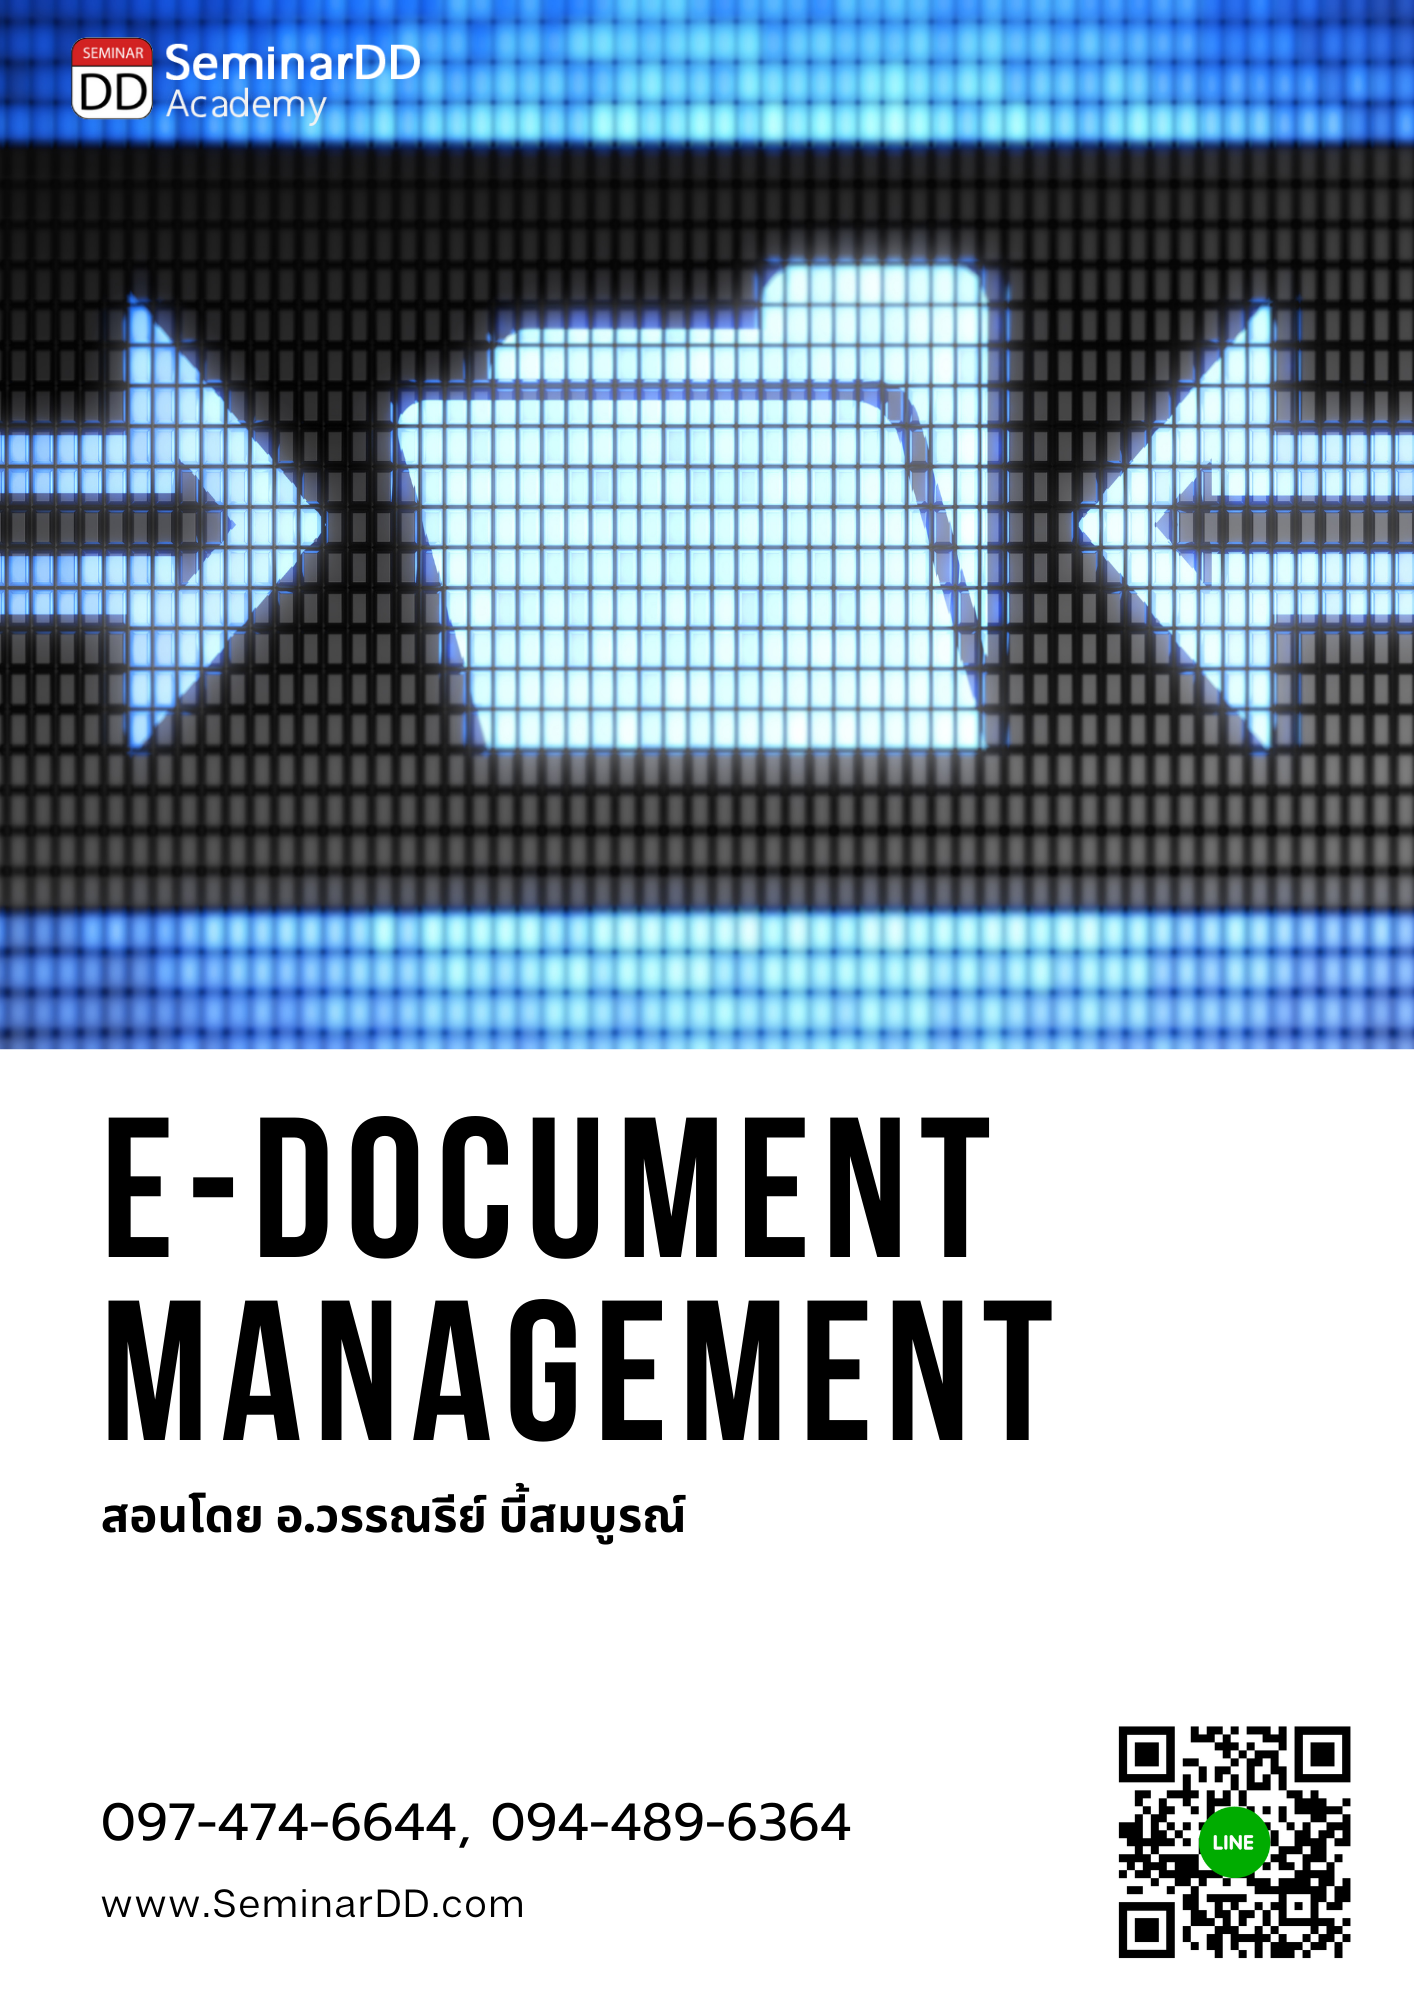 Online by Zoom หลักสูตร หลักสูตร การบริหารและจัดเก็บเอกสาร ในรูปแบบดิจิทัล ตามมาตรฐานสากล (E-Document Management)